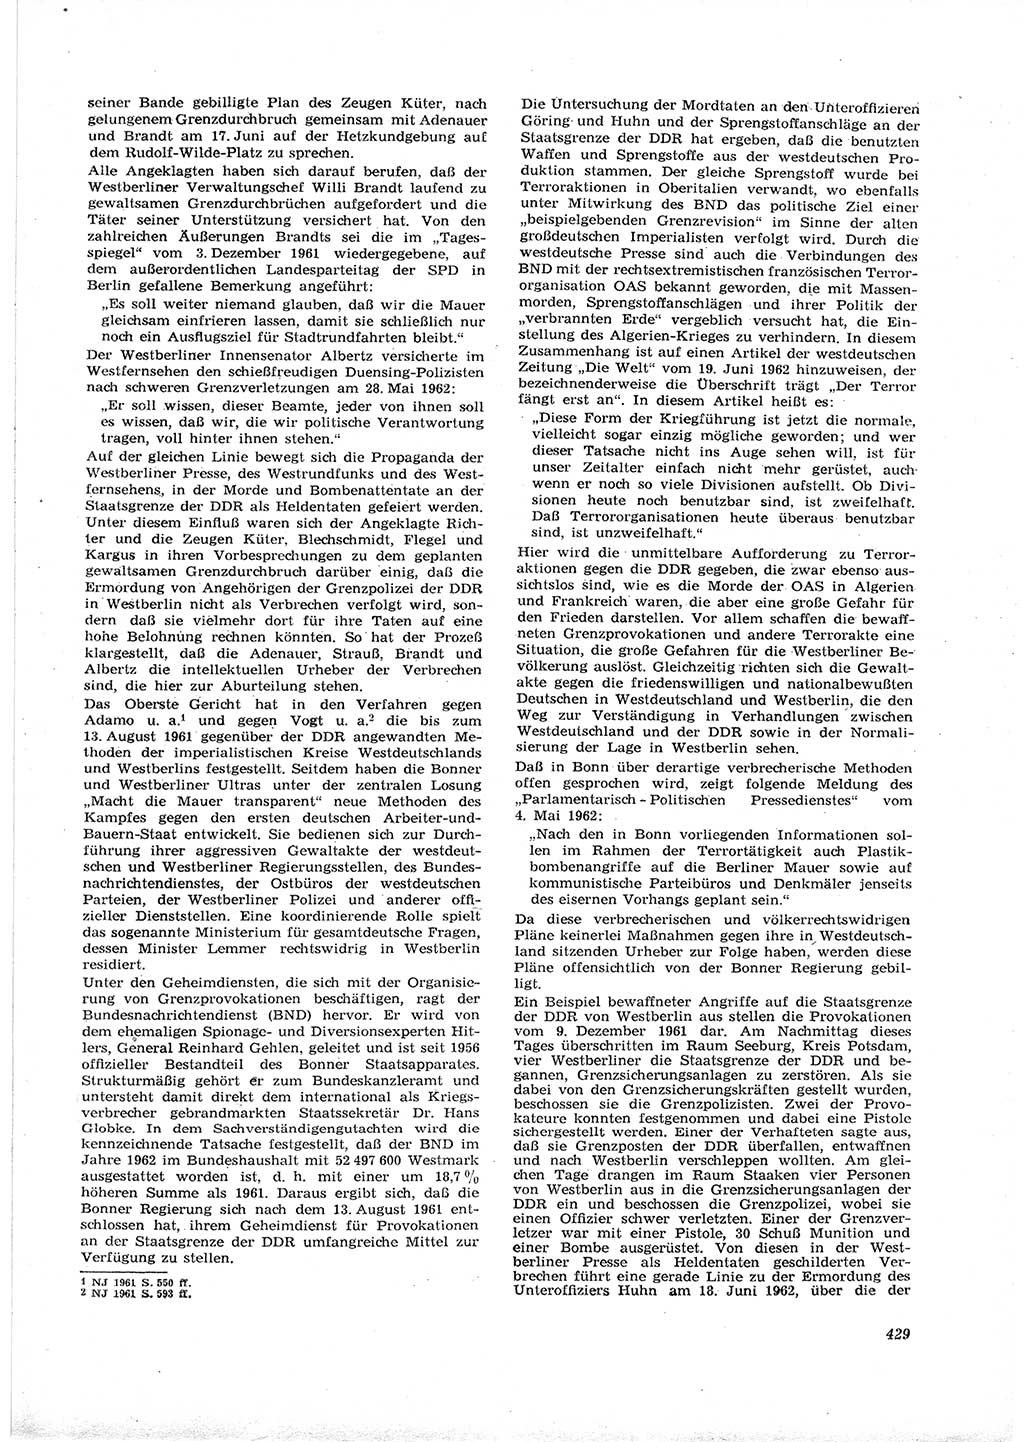 Neue Justiz (NJ), Zeitschrift für Recht und Rechtswissenschaft [Deutsche Demokratische Republik (DDR)], 16. Jahrgang 1962, Seite 429 (NJ DDR 1962, S. 429)